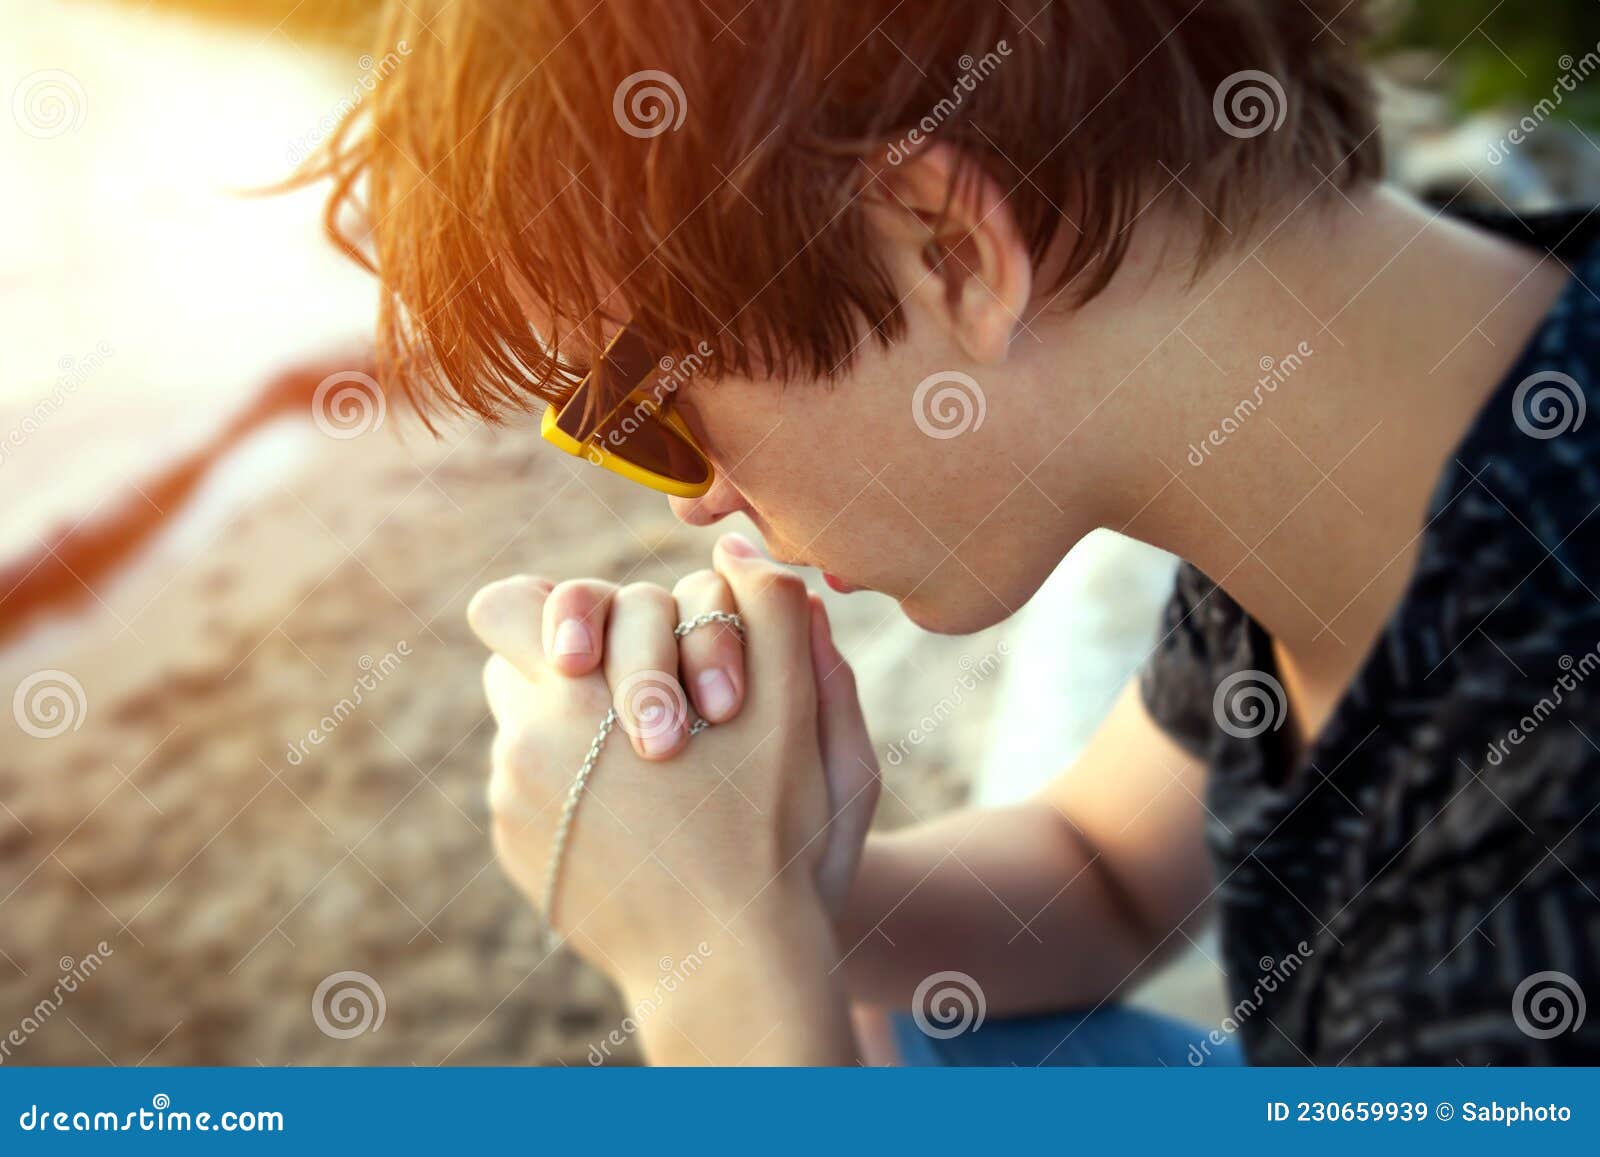 祷告的手势,基督教手势顺序图,祷告的正确手势_大山谷图库